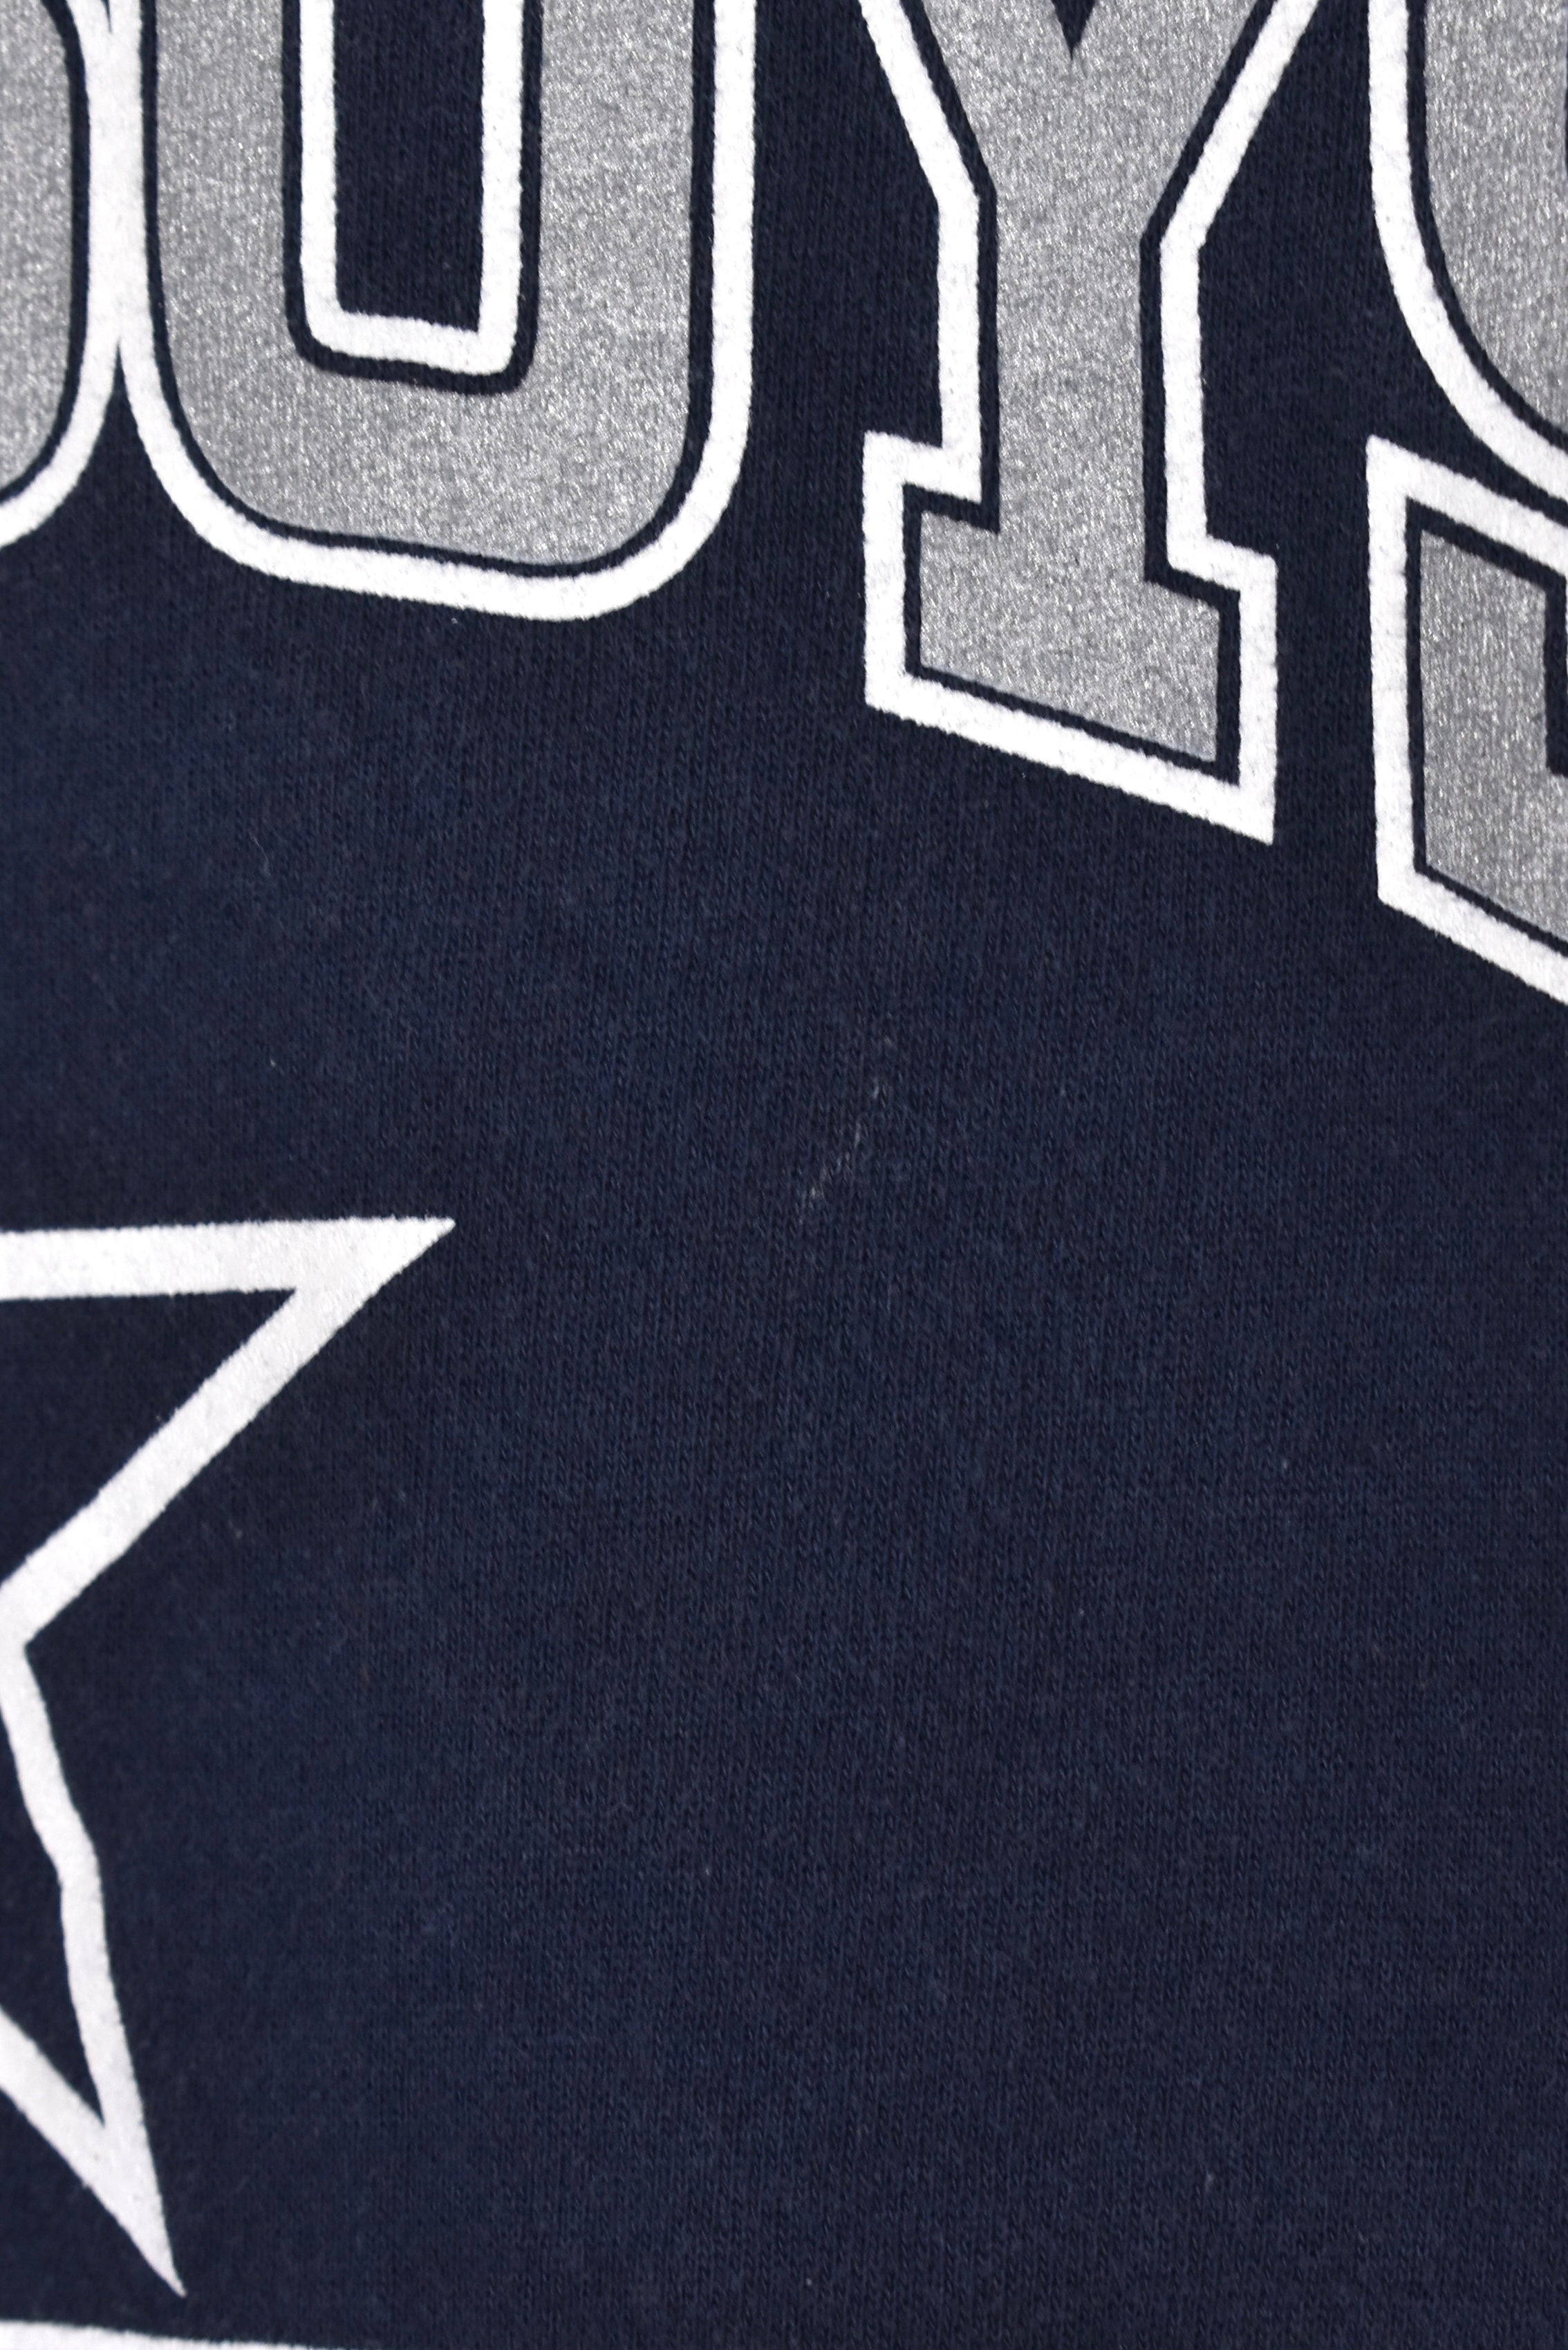 Vintage Dallas Cowboys sweatshirt (L), navy NFL graphic crewneck